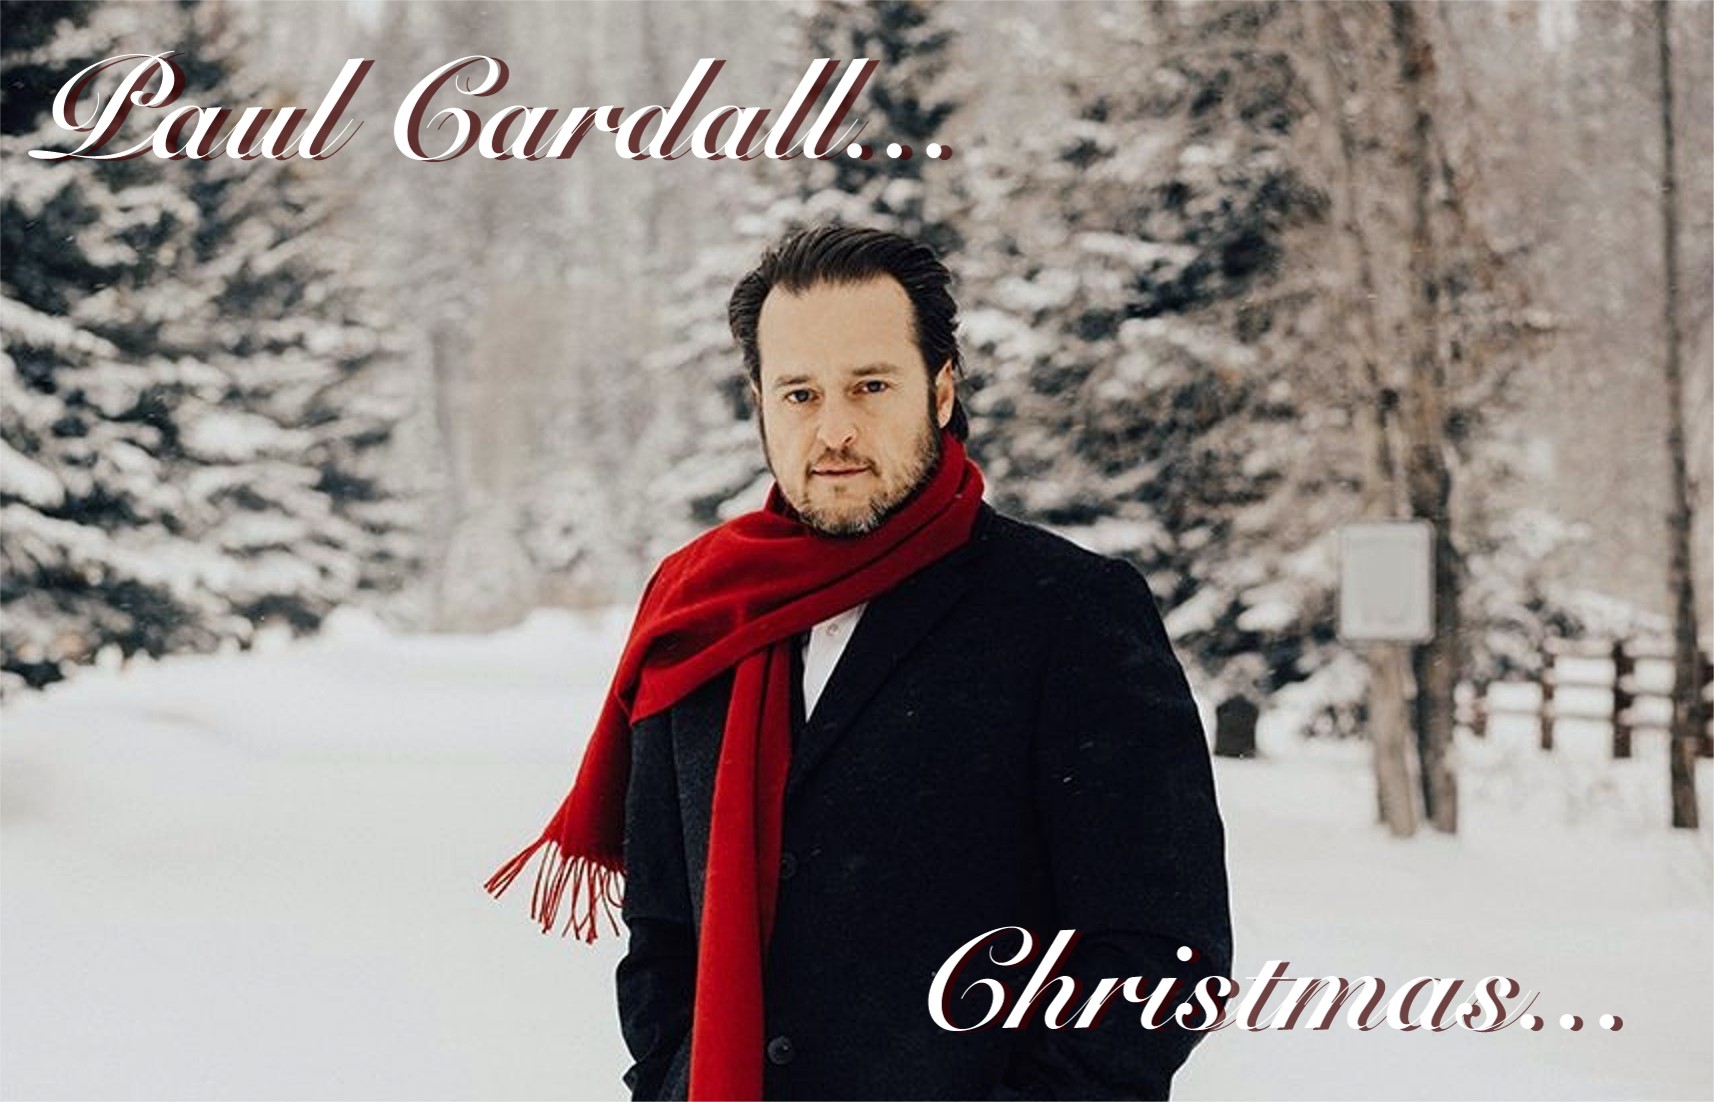  Paul Cardall Christmas 